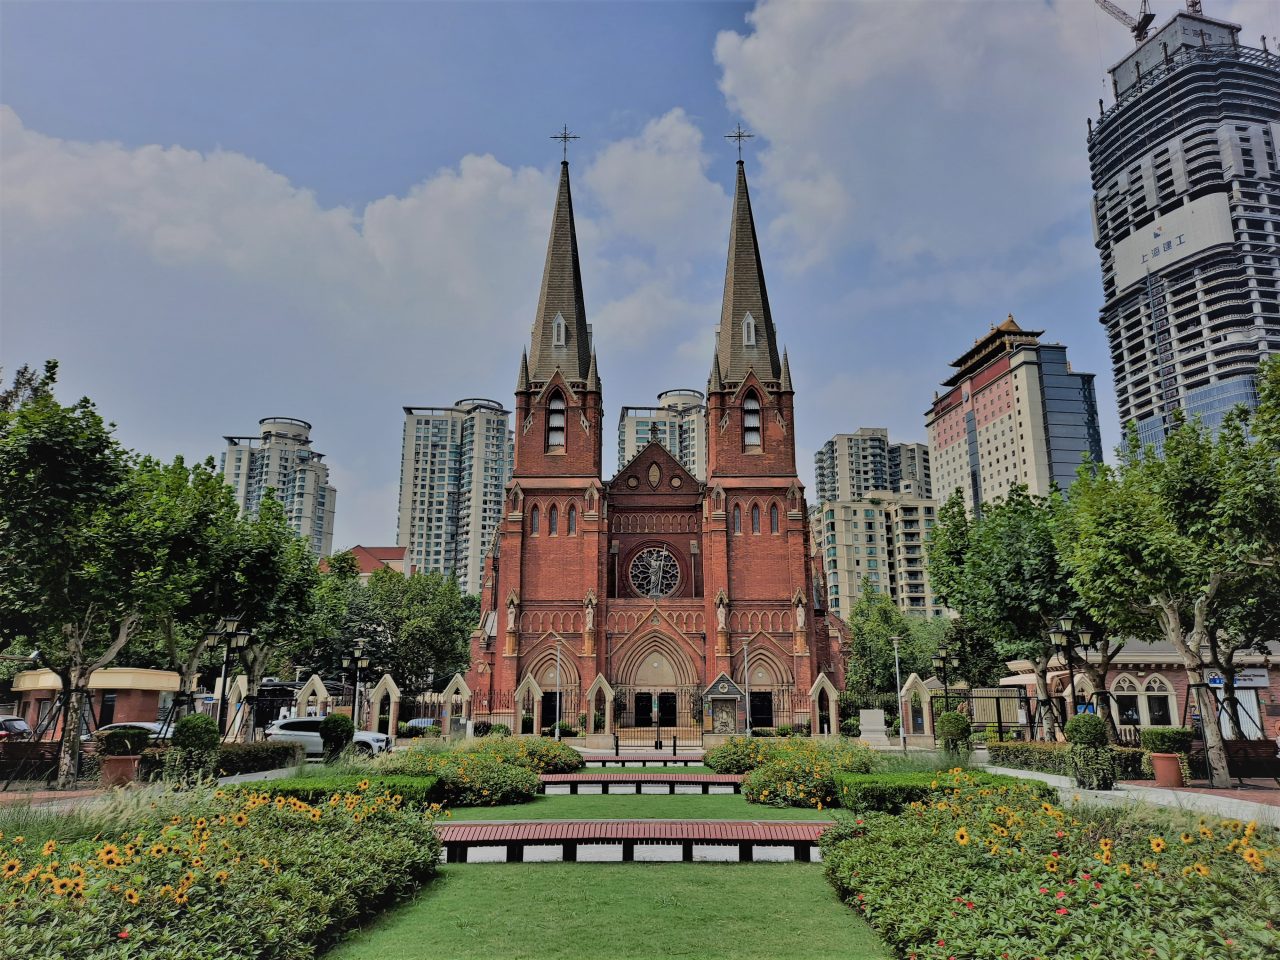 Katedrala sv. Ignacija u Šangaju, sjedište šangajskog biskupa/Foto: 钉钉, CC BY-SA 4.0/WIkimedia Commons